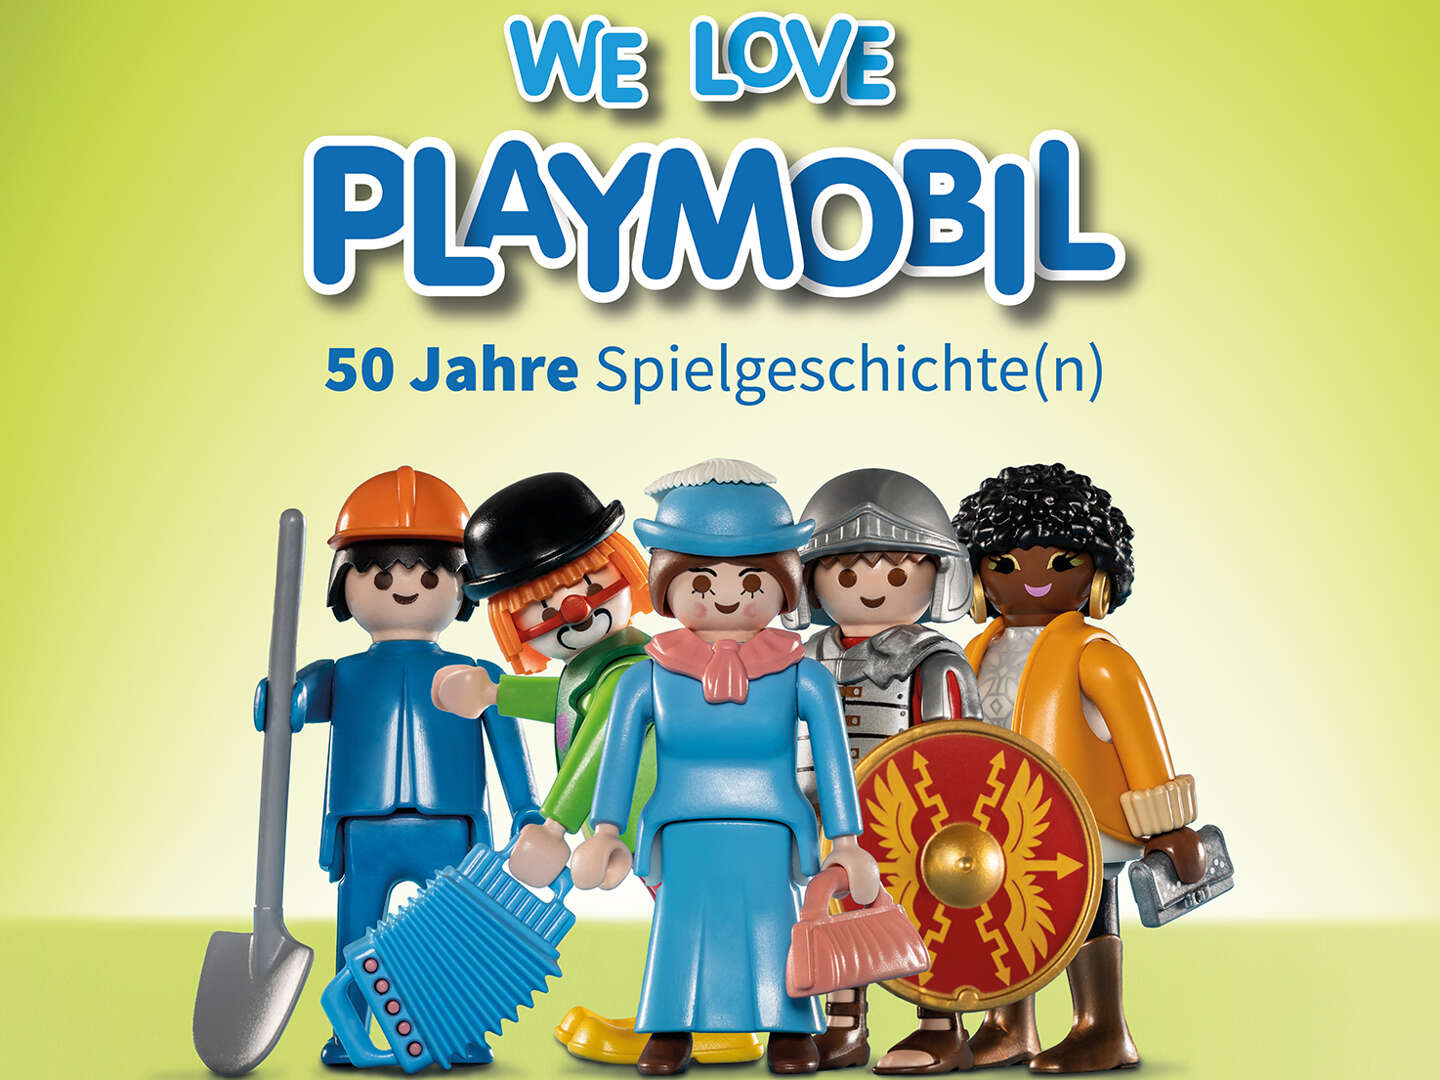 Playmobil - Die Jubiläumsausstellung